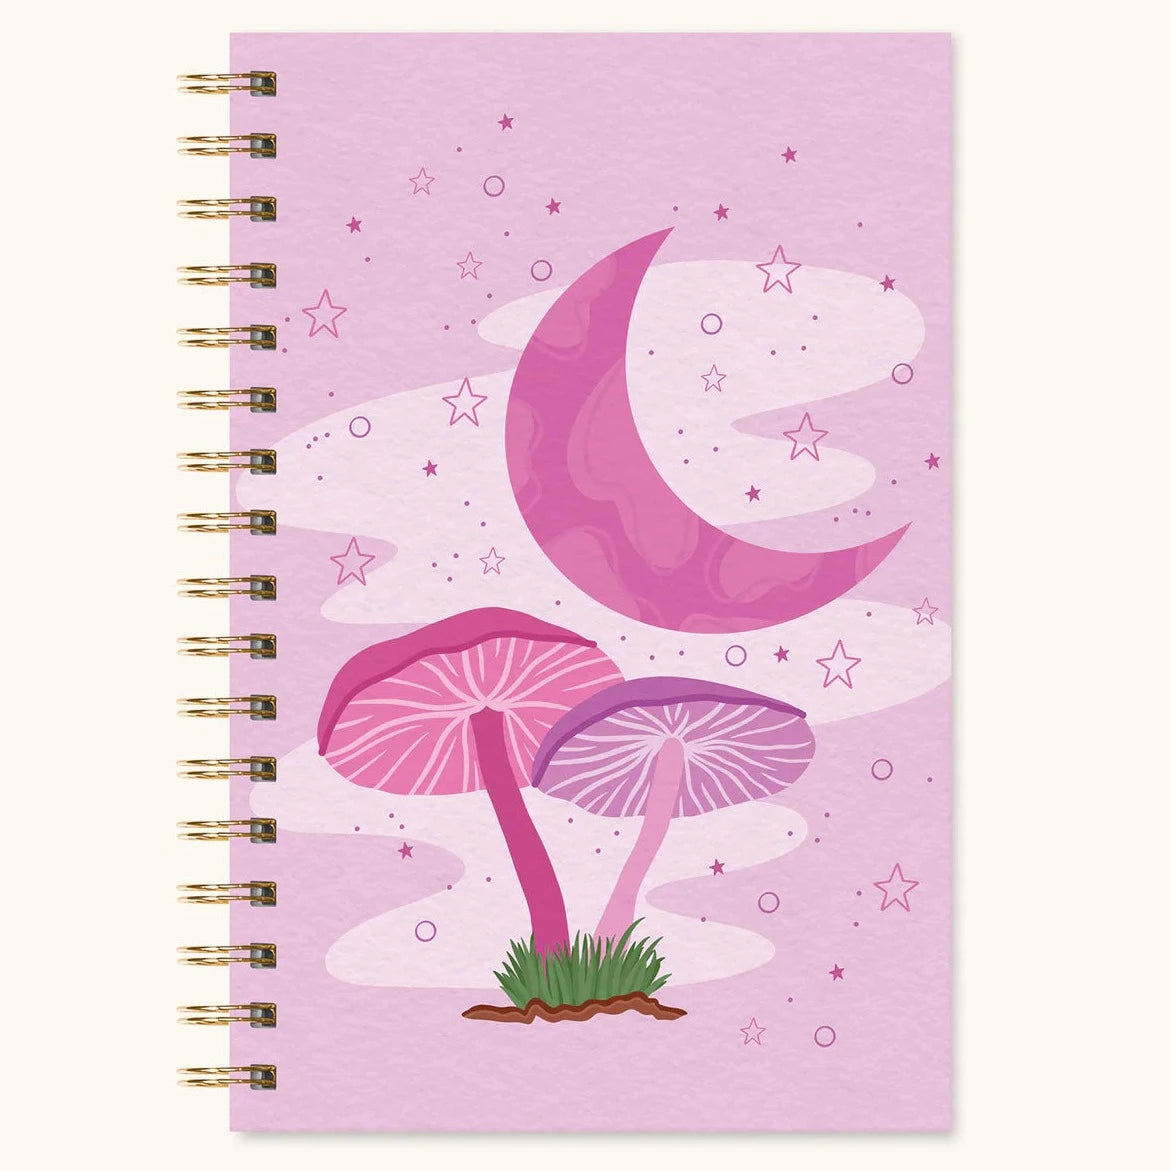 Moonlit Mushroom Spiral Notebook